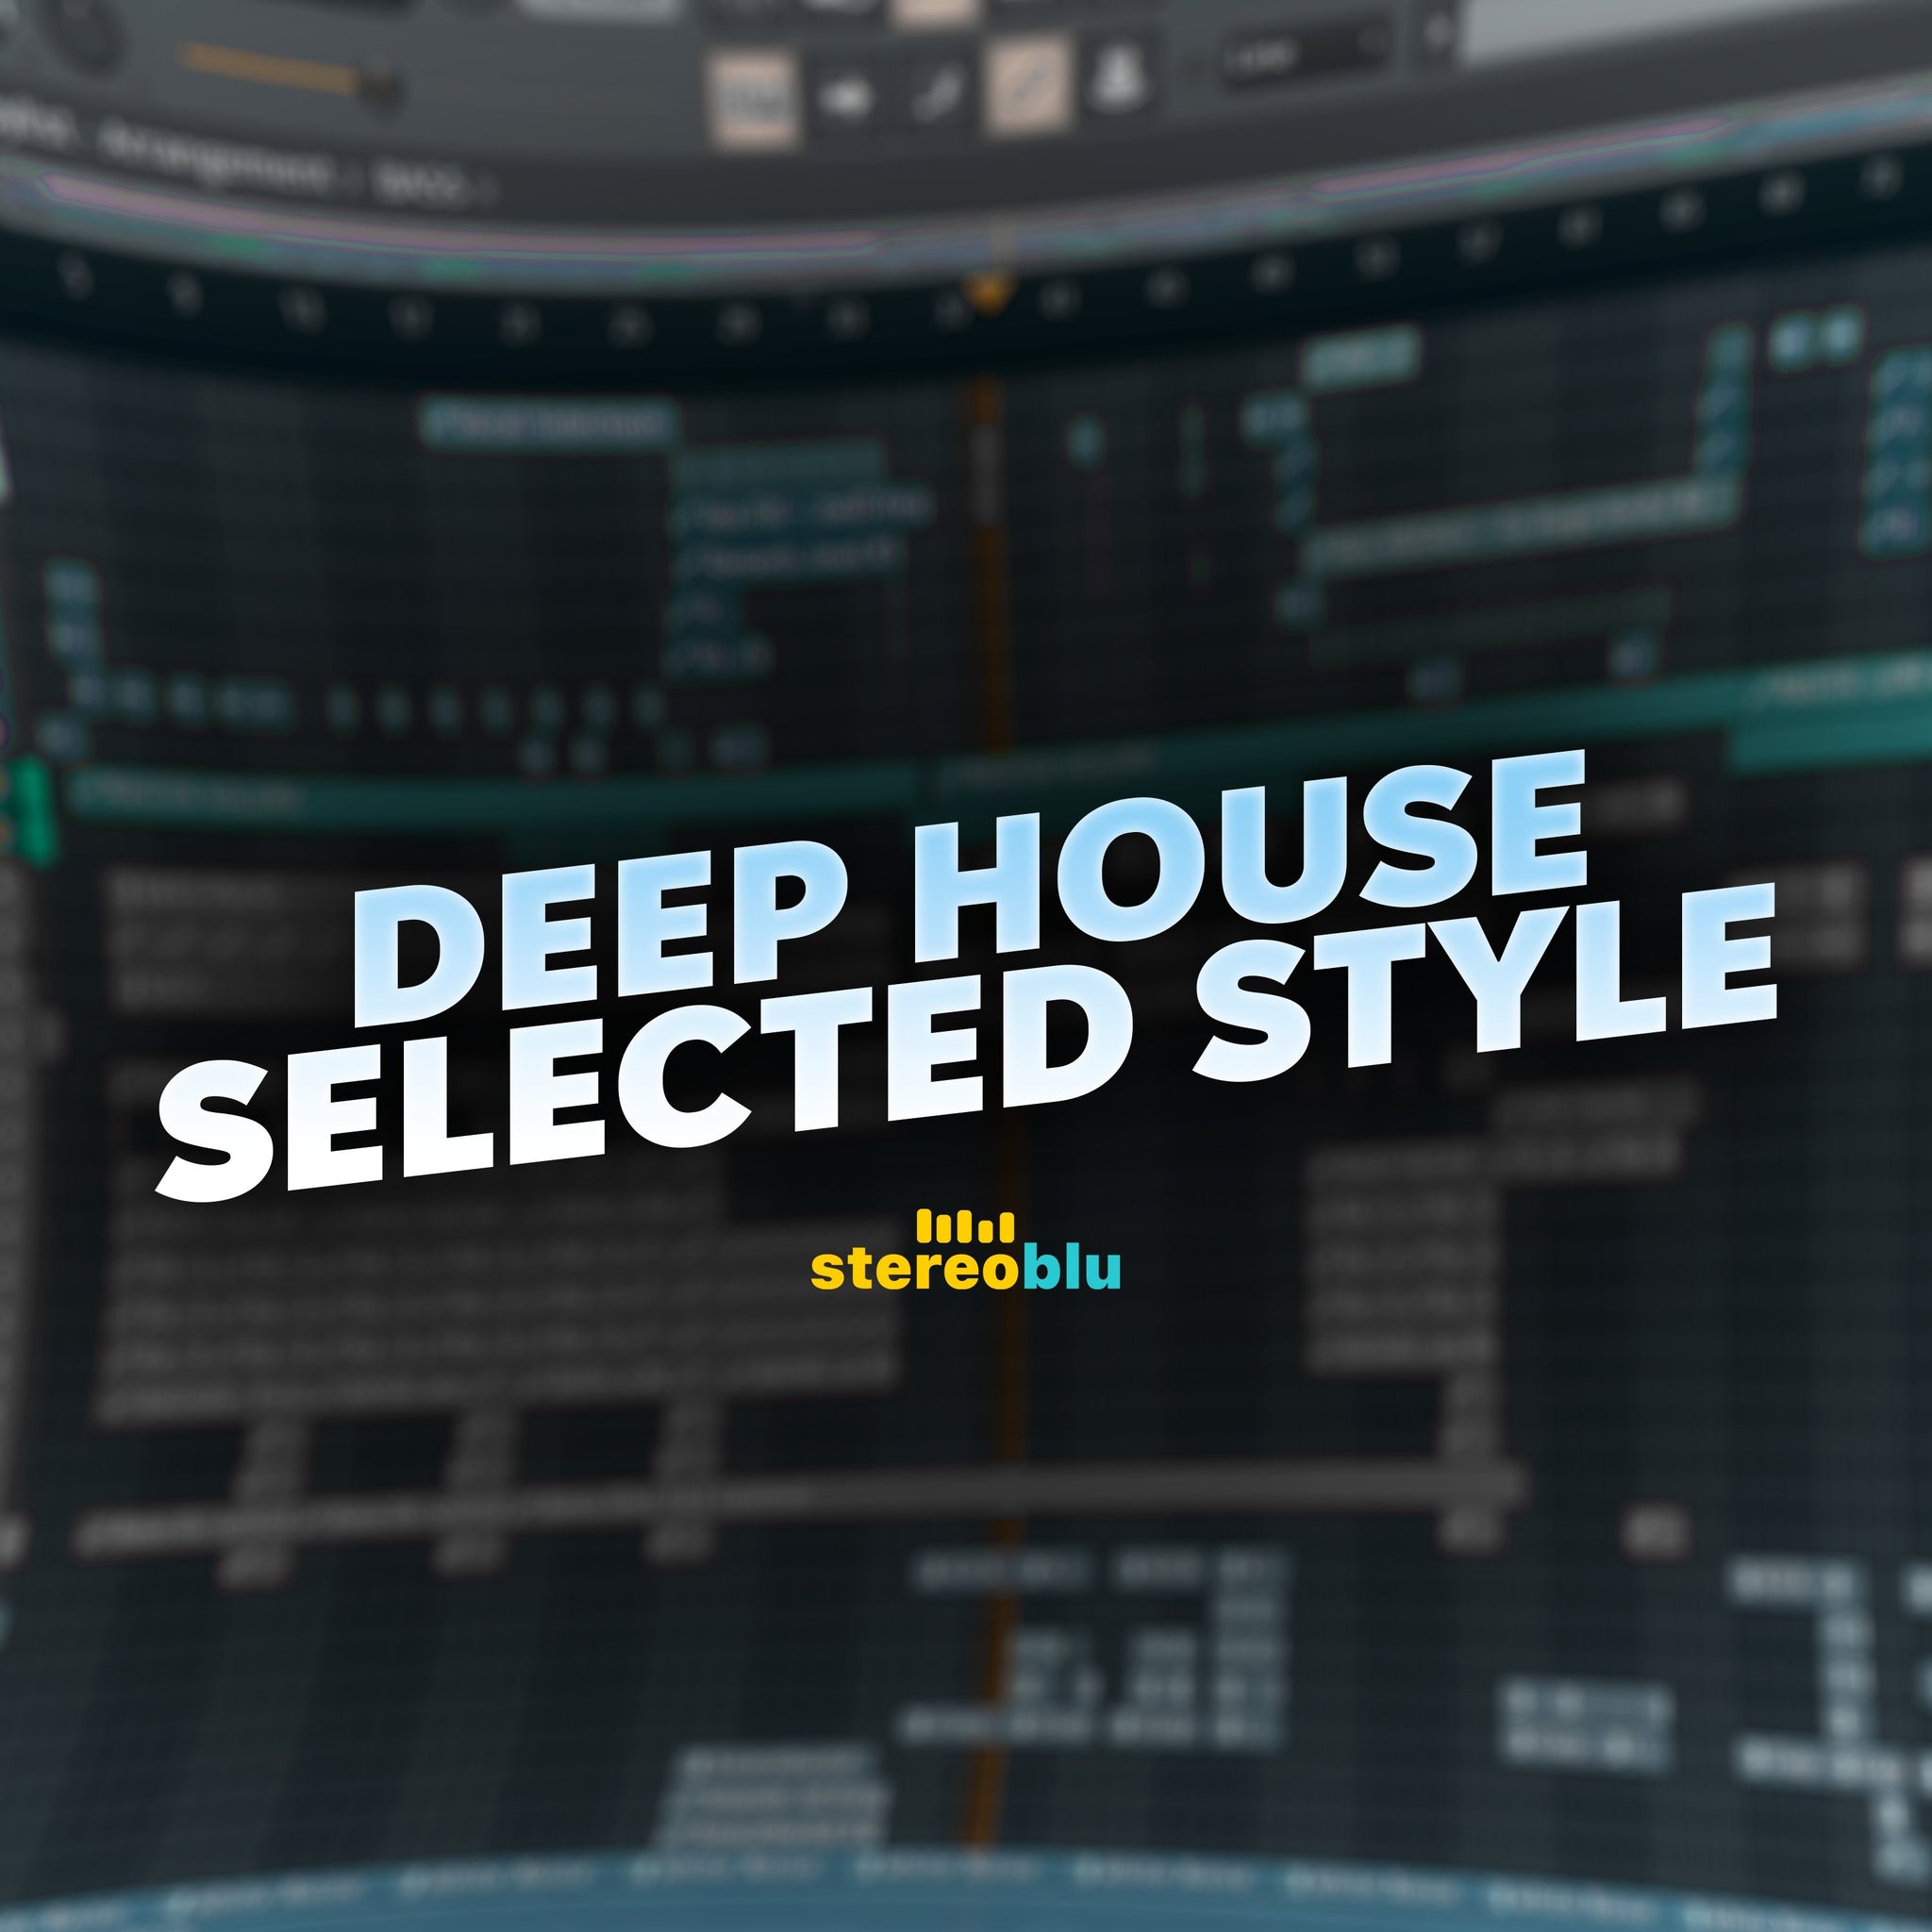 Deep House / Selected Style Project - FLP Cloud - Scraps Audio